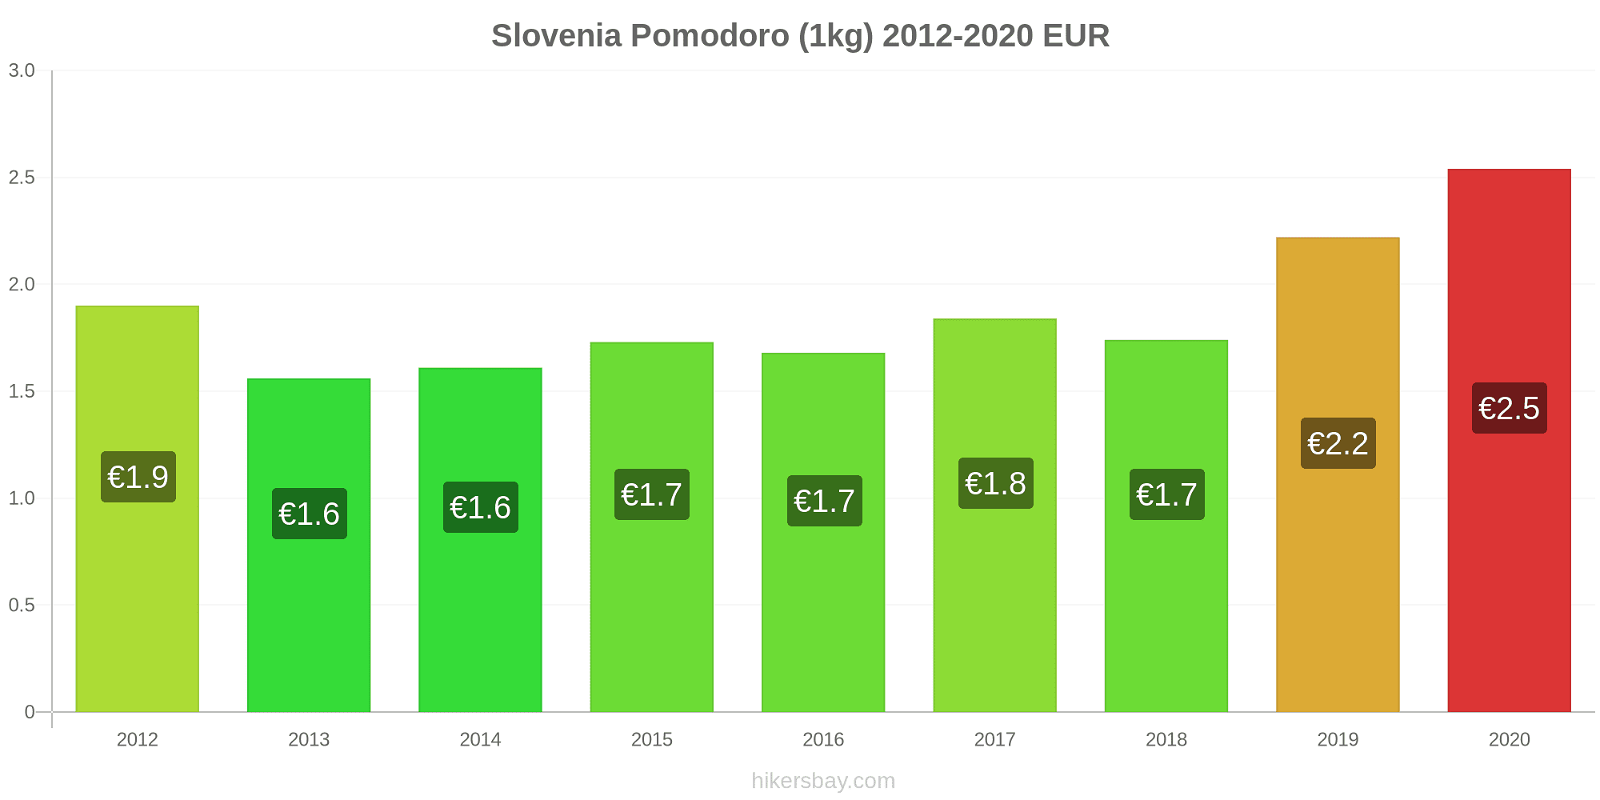 Slovenia variazioni di prezzo Pomodoro (1kg) hikersbay.com